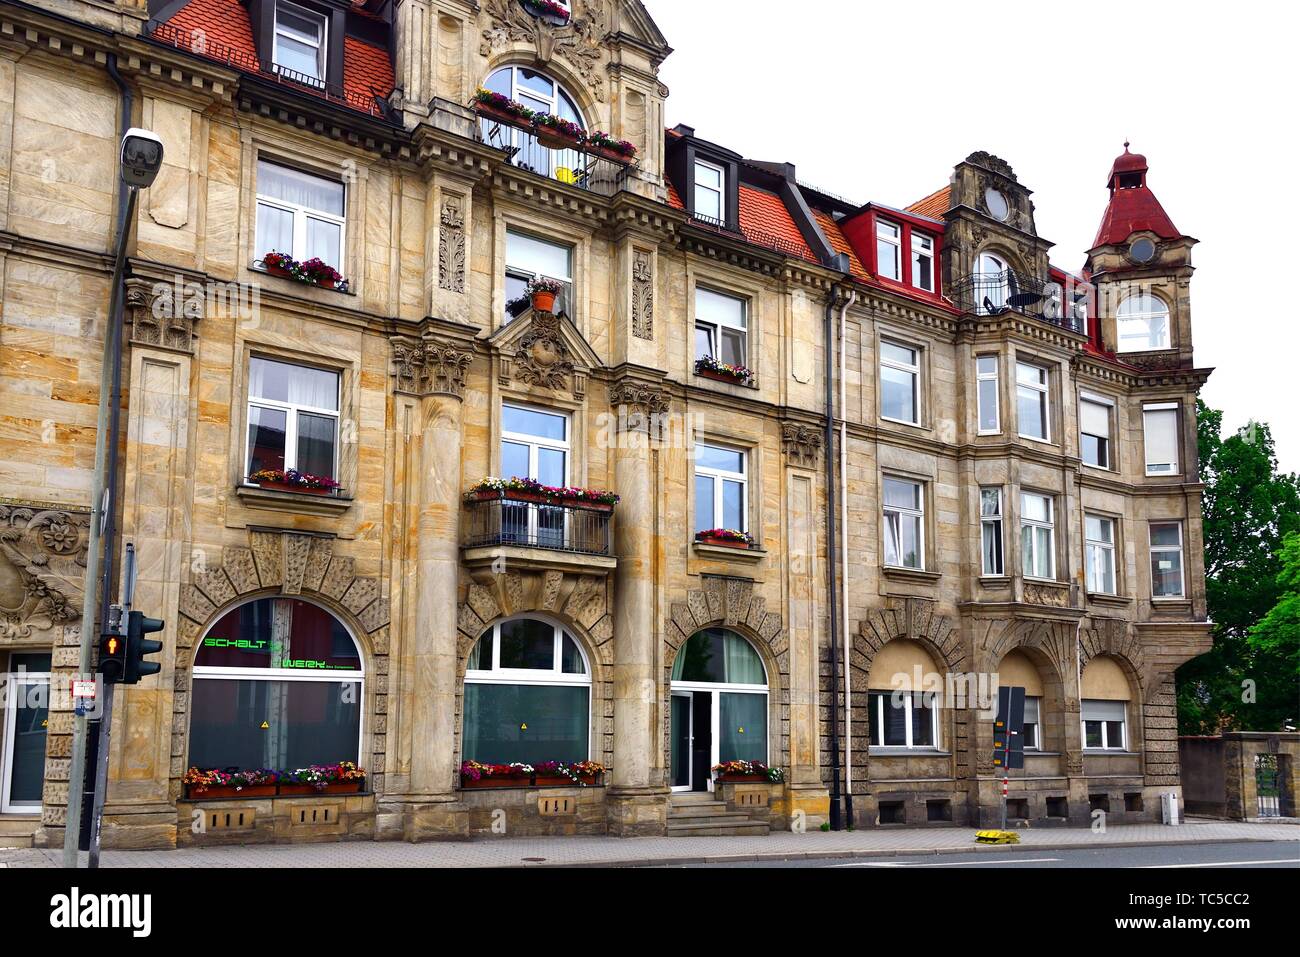 Traditionelle Architektur - Stadthaus am Wilhelminenstrasse, Bayreuth - Oberfranken, Bayern, Bayern, Deutschland, Europa Stockfoto